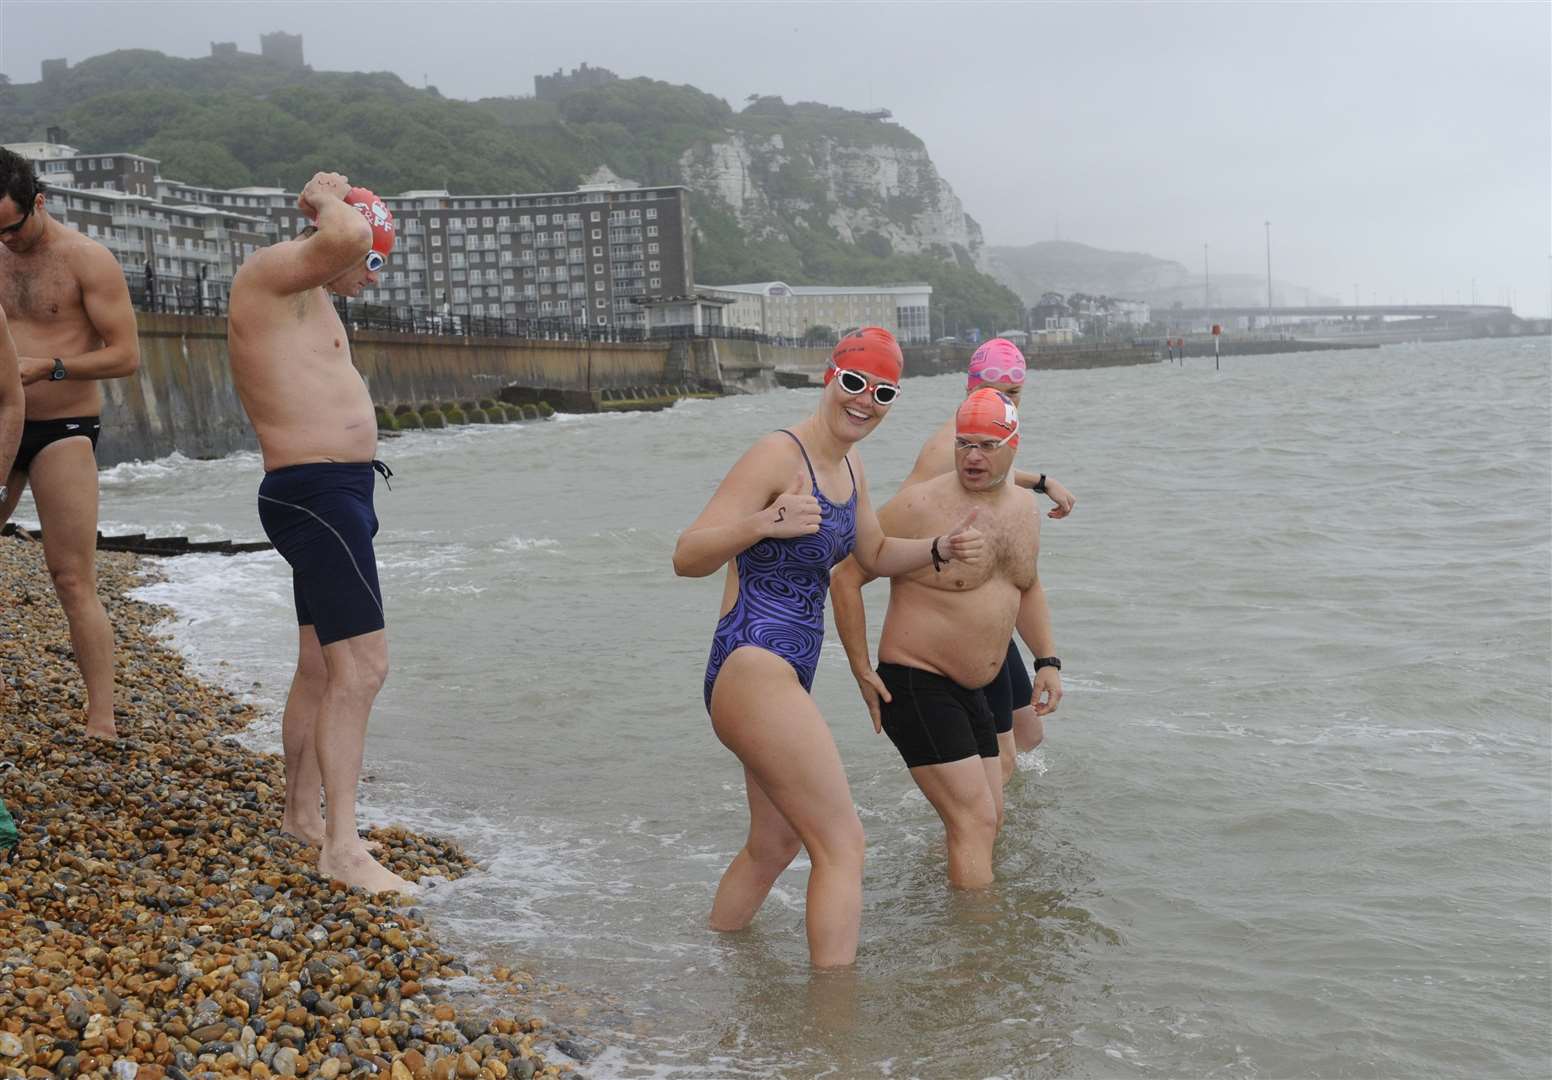 Les nageurs de la Manche s'entraînent à Douvres, 2013.Photo : Tony Flashman pour le Dover Mercury